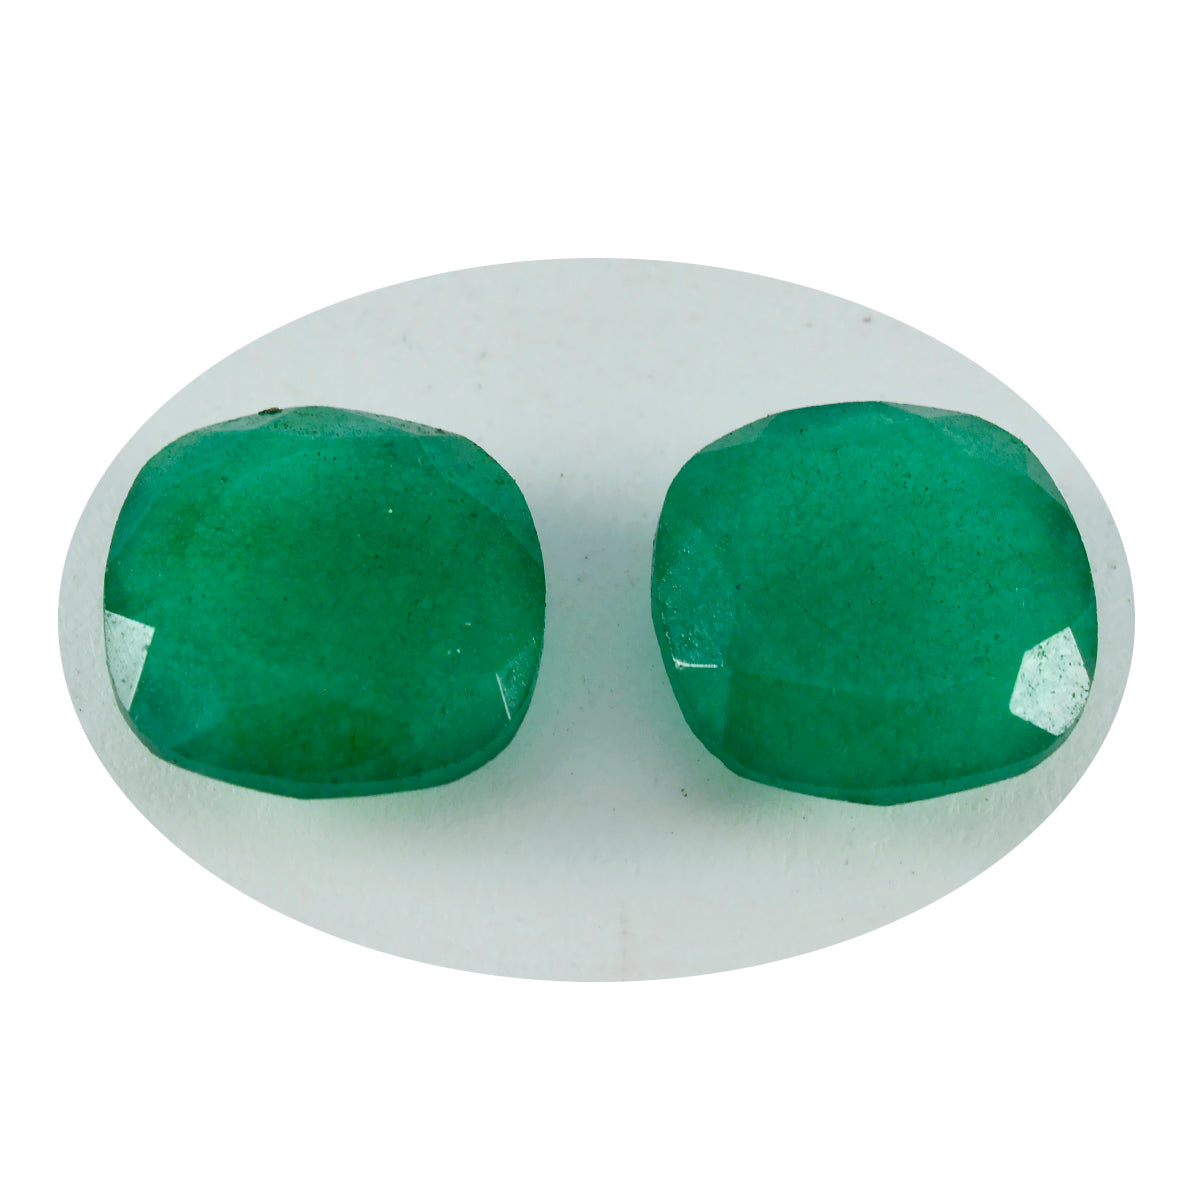 Riyogems 1 Stück natürlicher grüner Jaspis, facettiert, 11 x 11 mm, Kissenform, gut aussehender, hochwertiger loser Edelstein